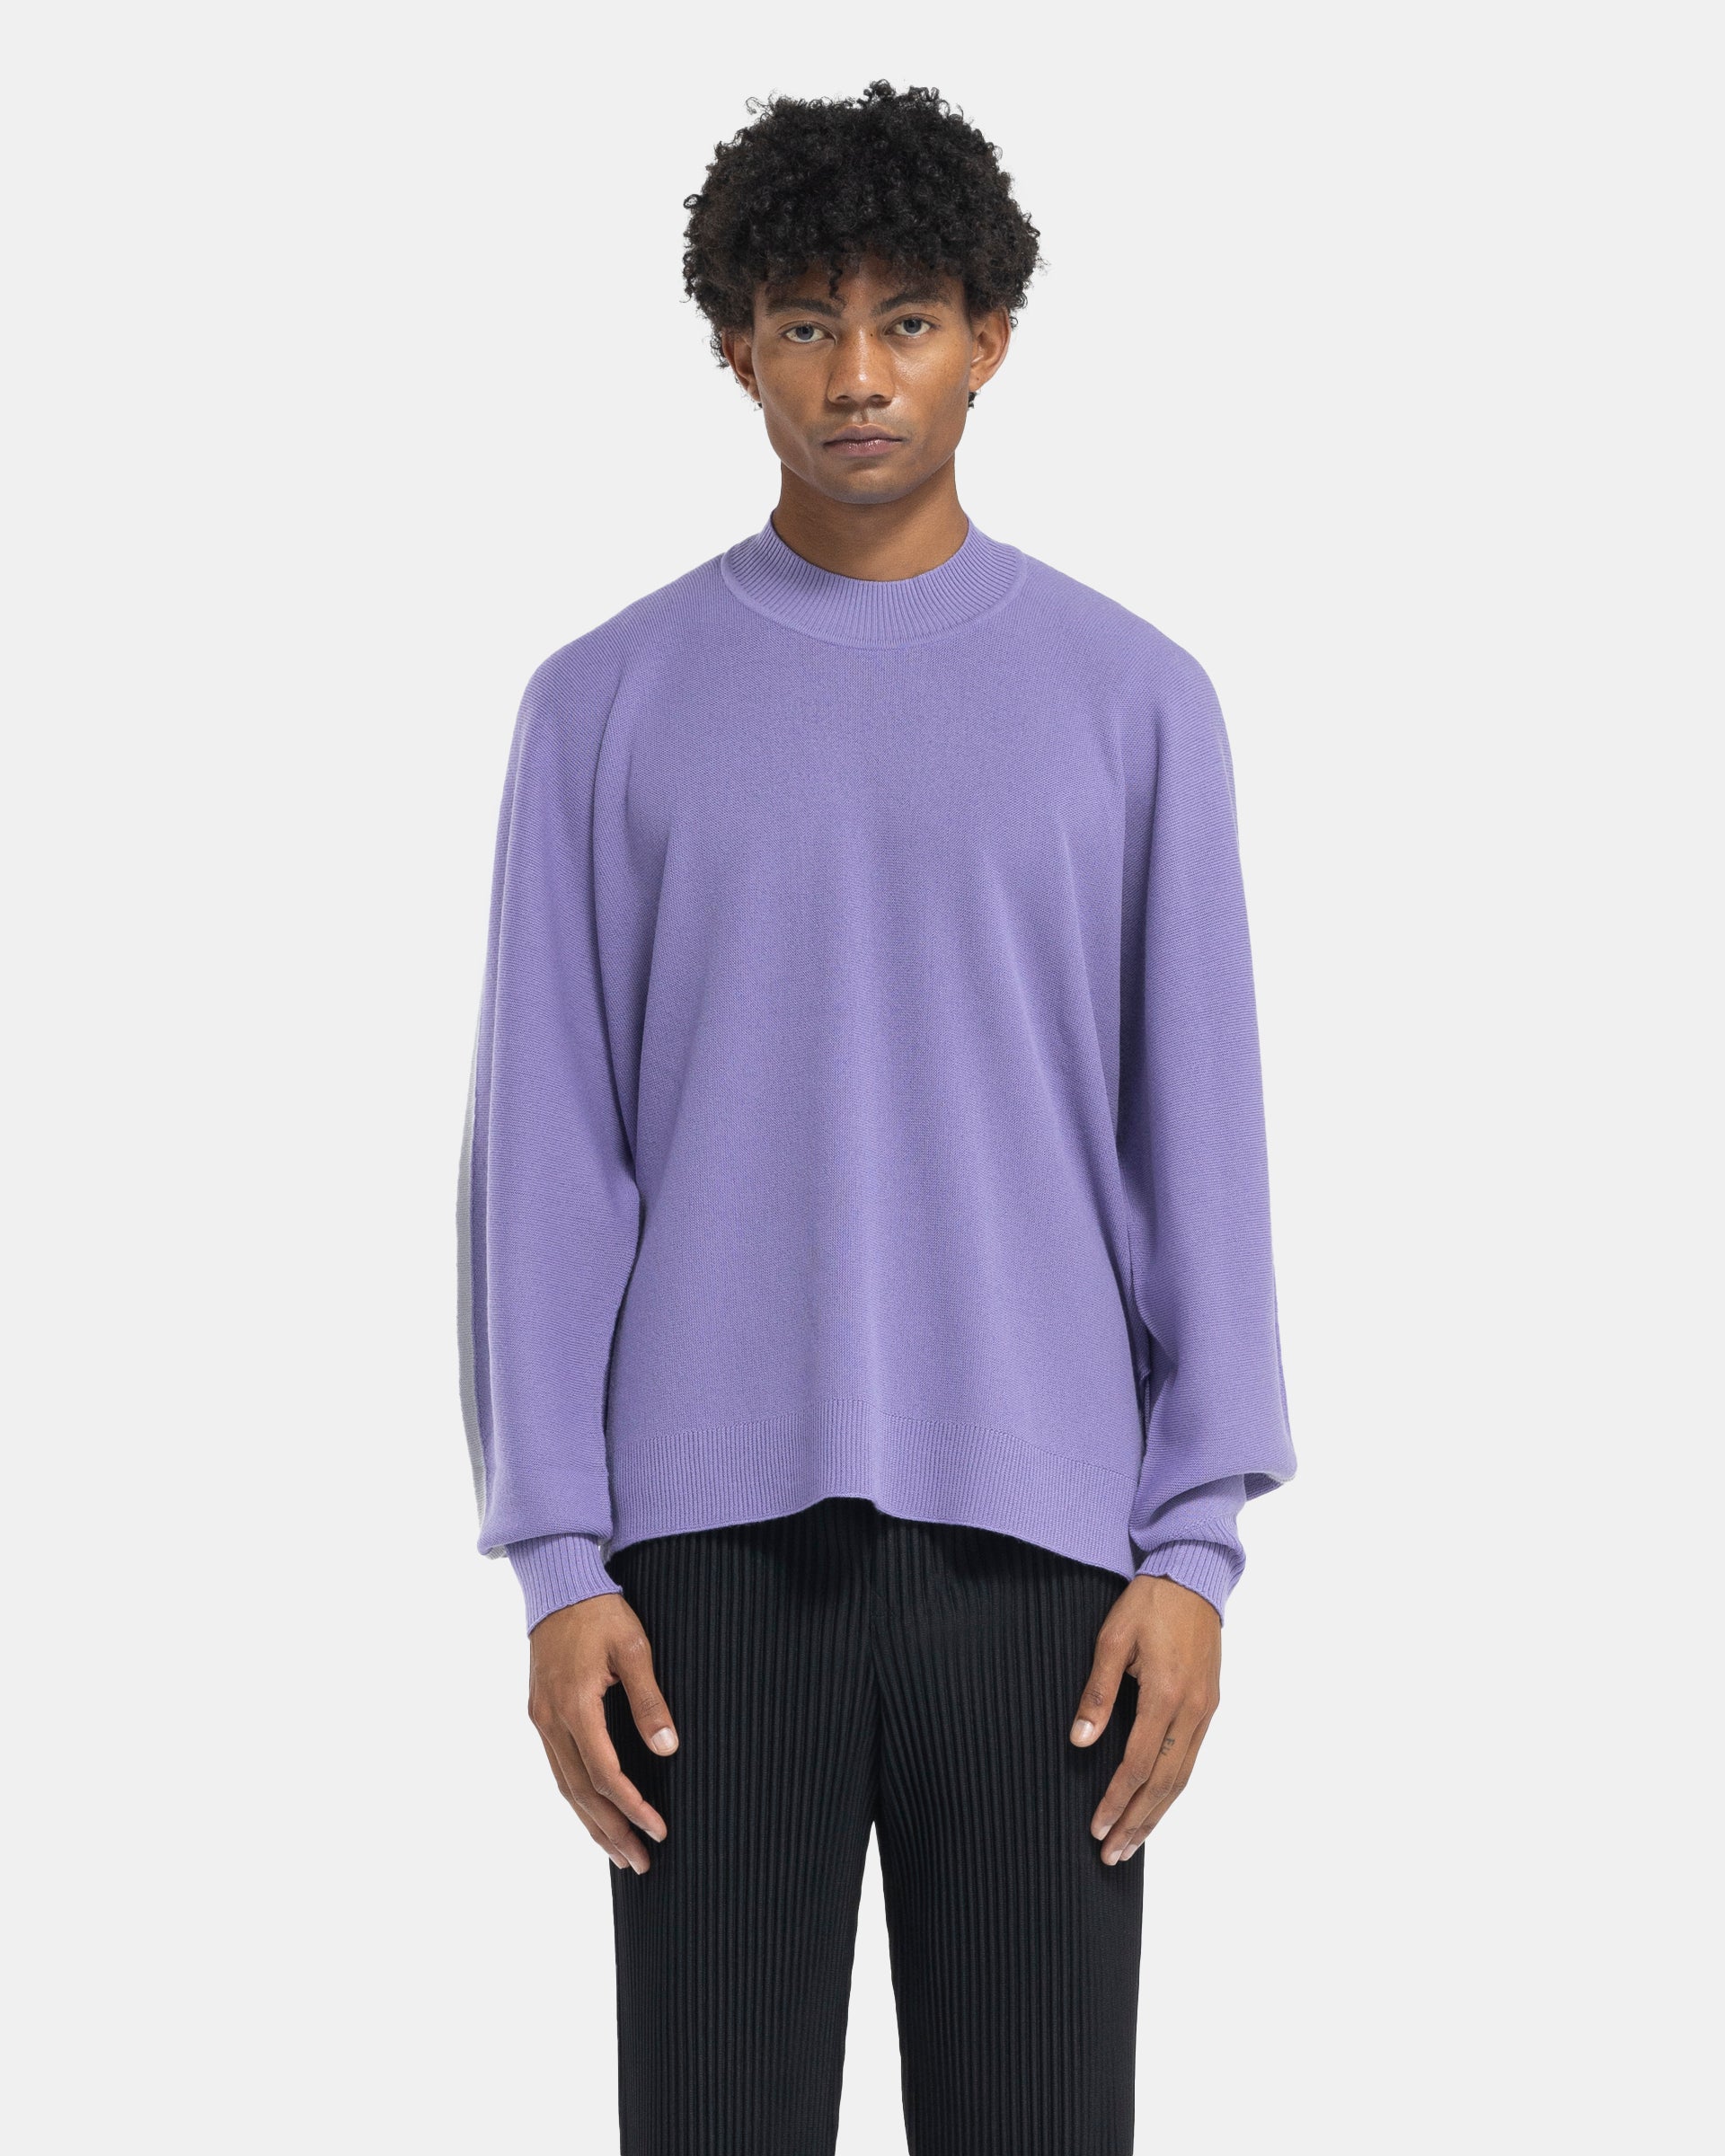 Framework Knit Mockneck in Purple